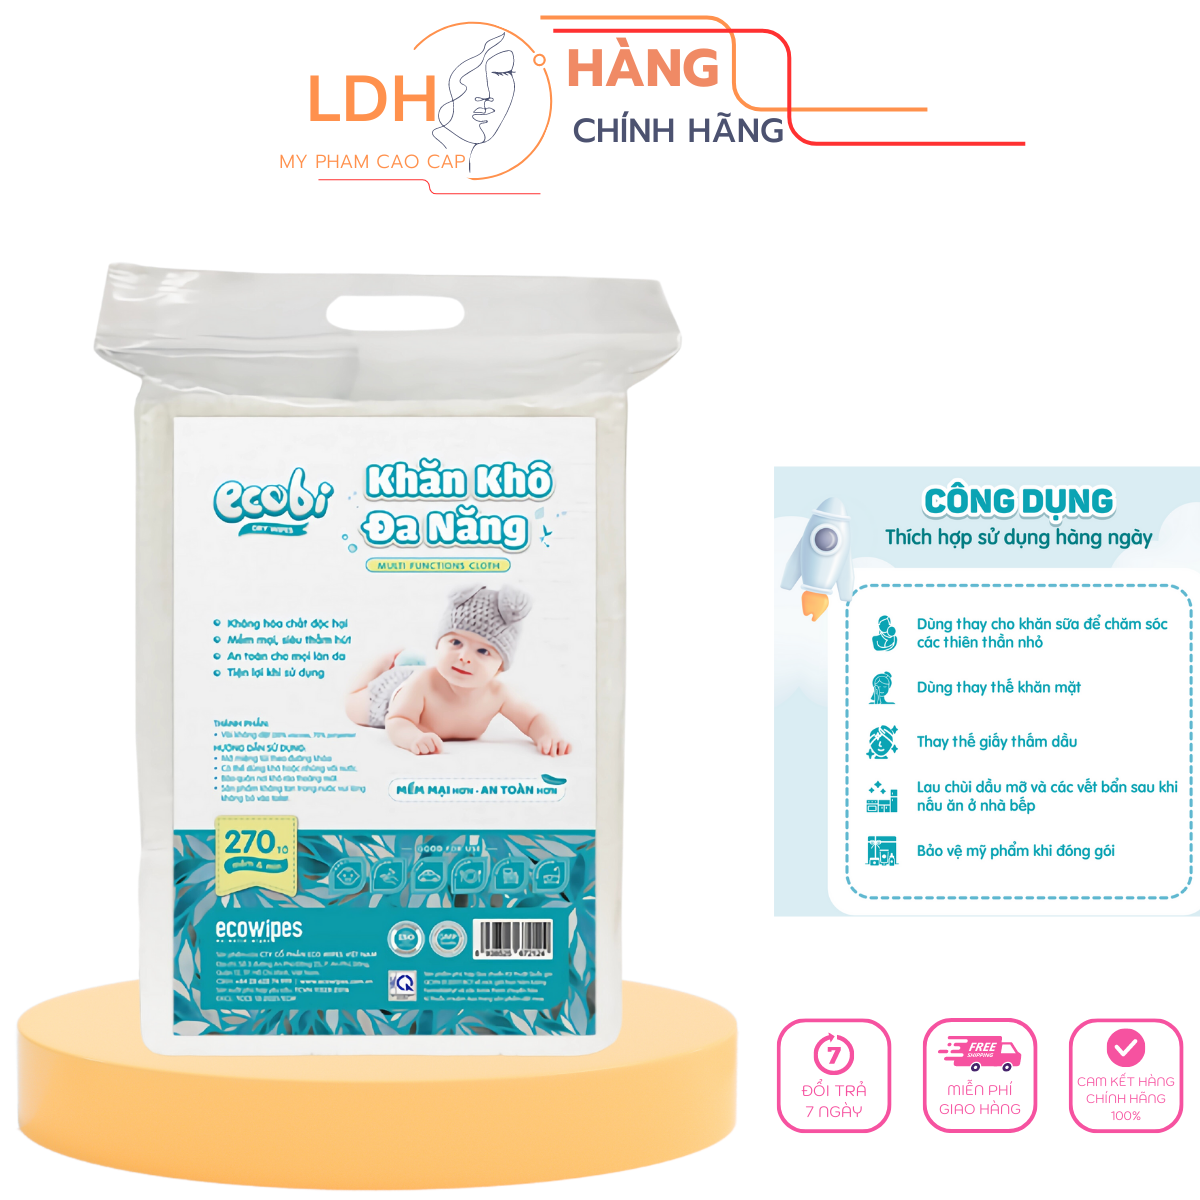 túi khăn khô đa năng cho bé Ecobi túi 270 tờ dùng thay khăn sữa an toàn